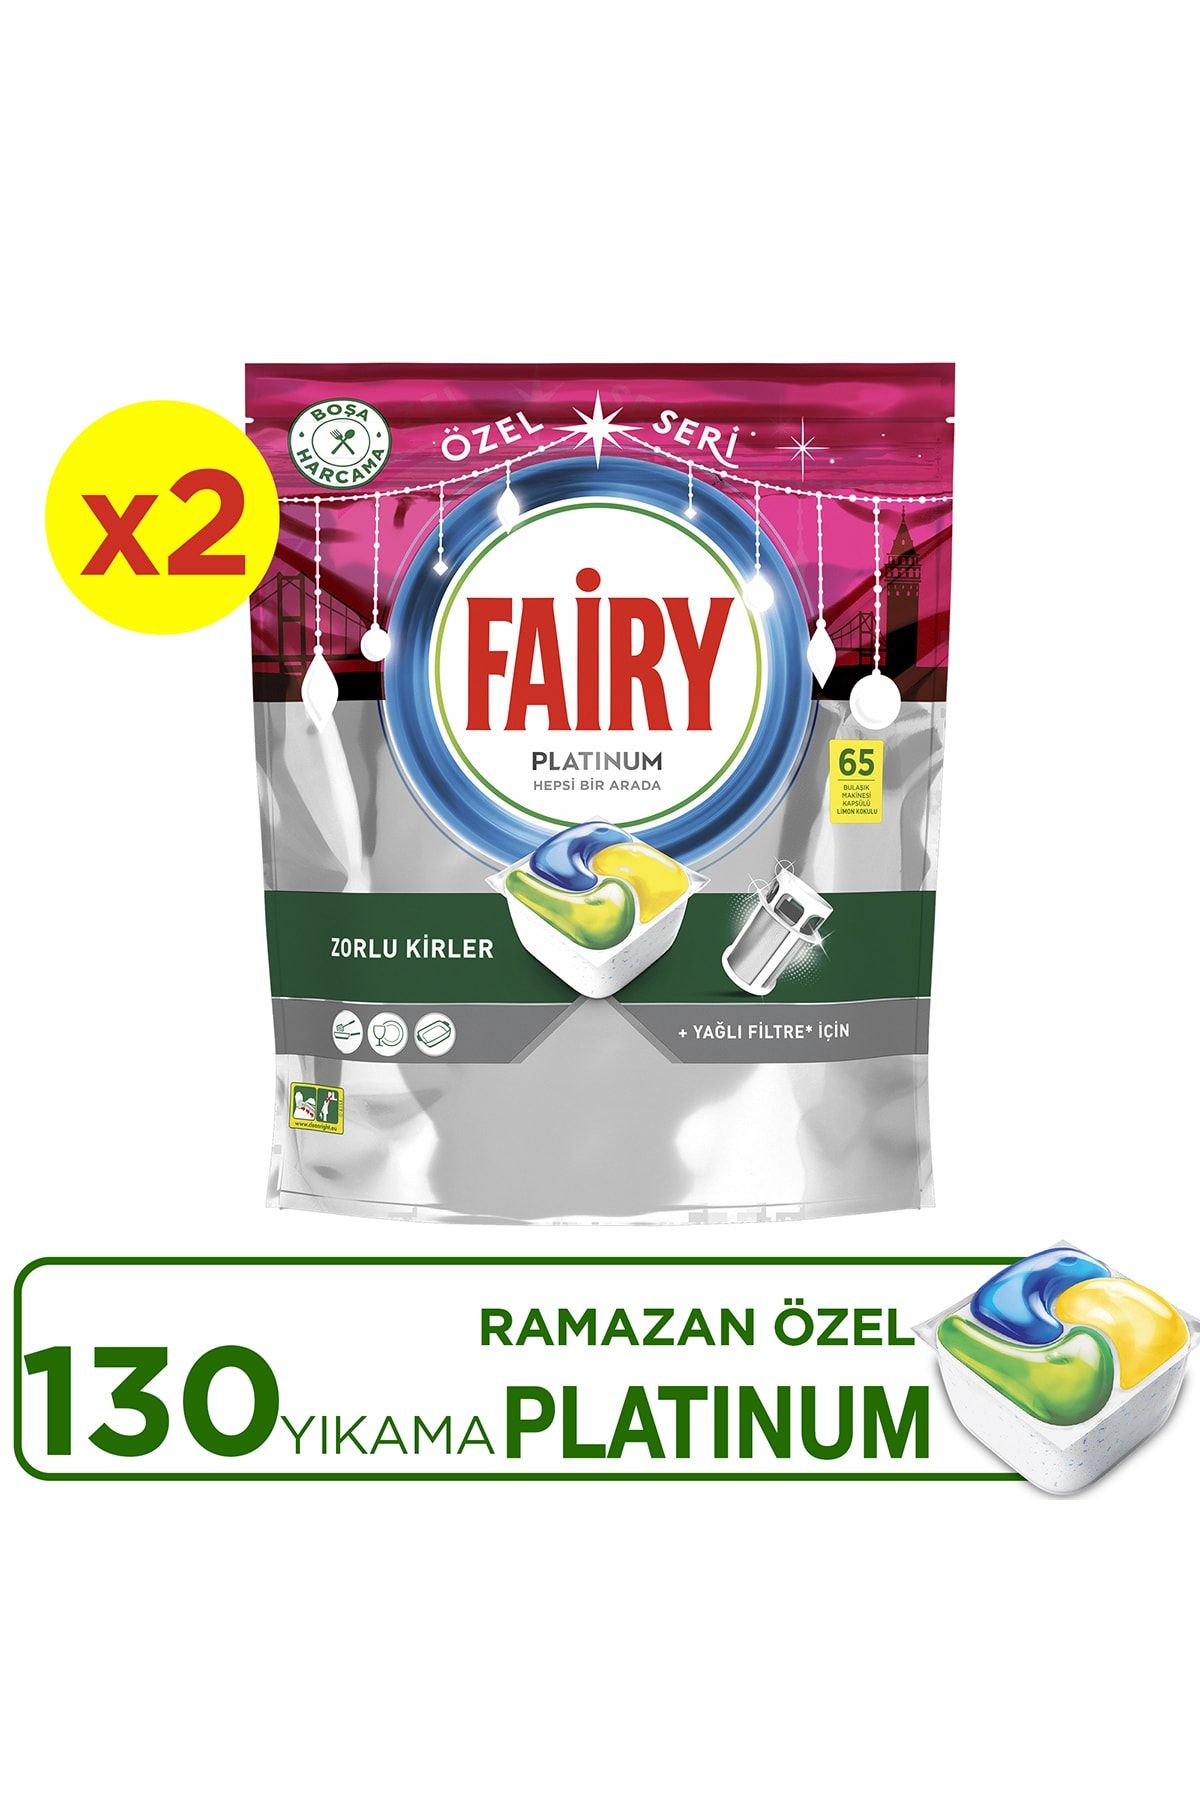 Fairy Platinum 130'li Ramazan Özel Seri Bulaşık Makinası Kapsülü (65X2)